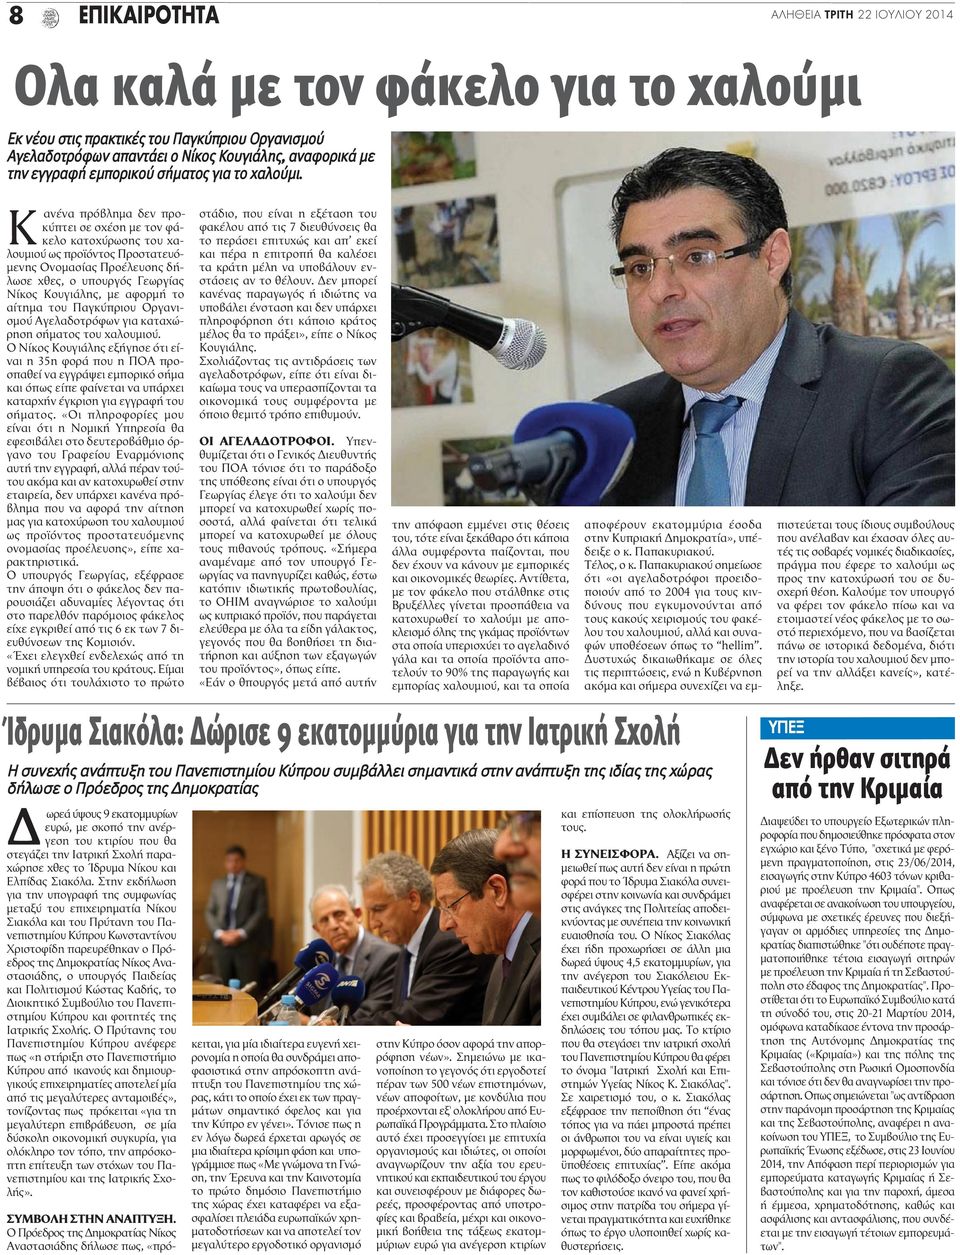 Κ ανένα πρόβλημα δεν προκύπτει σε σχέση με τον φάκελο κατοχύρωσης του χαλουμιού ως προϊόντος Προστατευόμενης Ονομασίας Προέλευσης δήλωσε χθες, ο υπουργός Γεωργίας Νίκος Κουγιάλης, με αφορμή το αίτημα